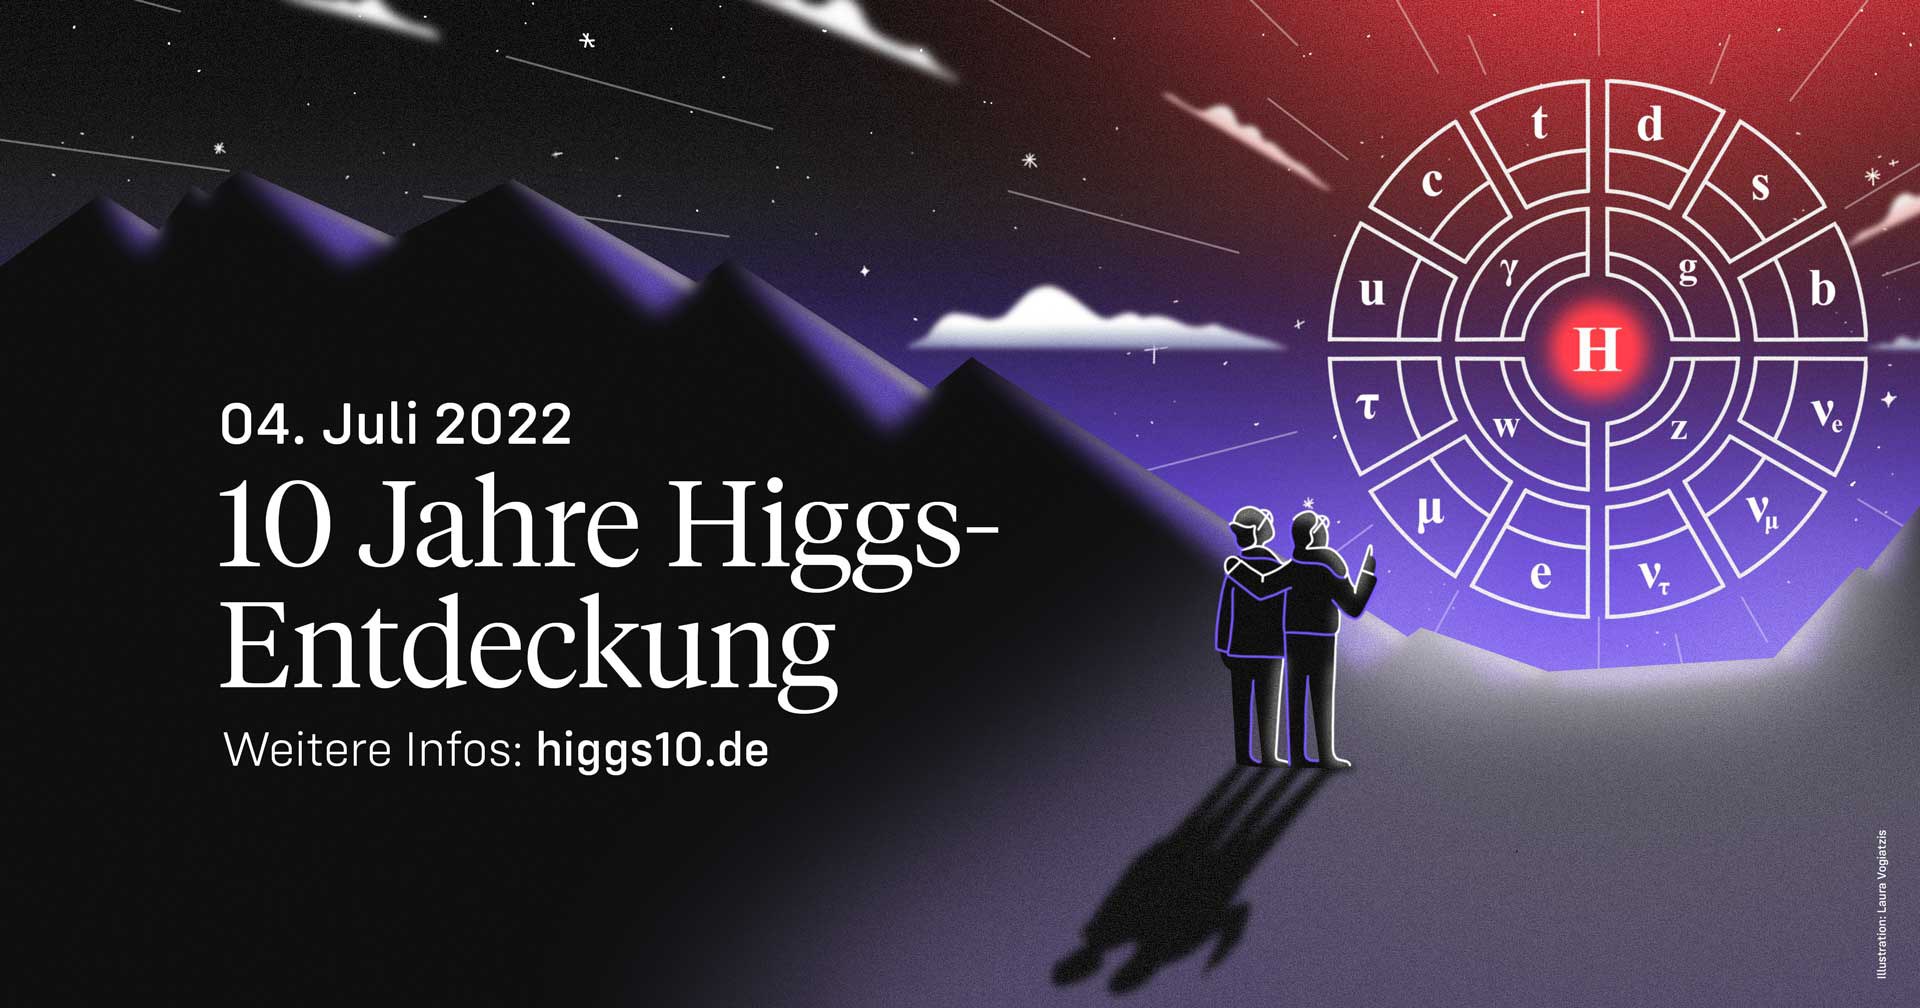 Bild: 10 Jahre Higgs-Entdeckung